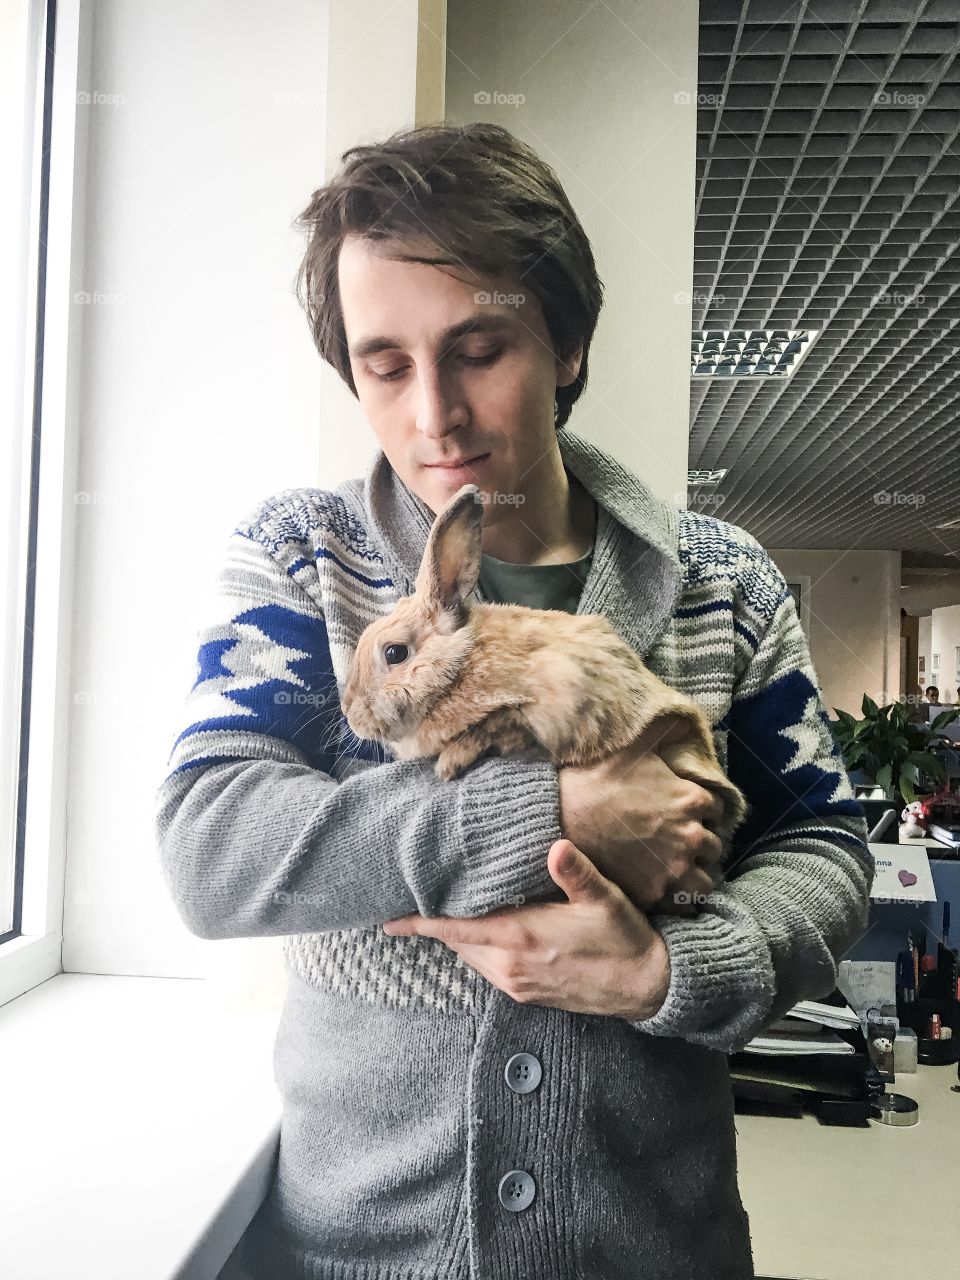 Man hugging fluffy rabbit in office